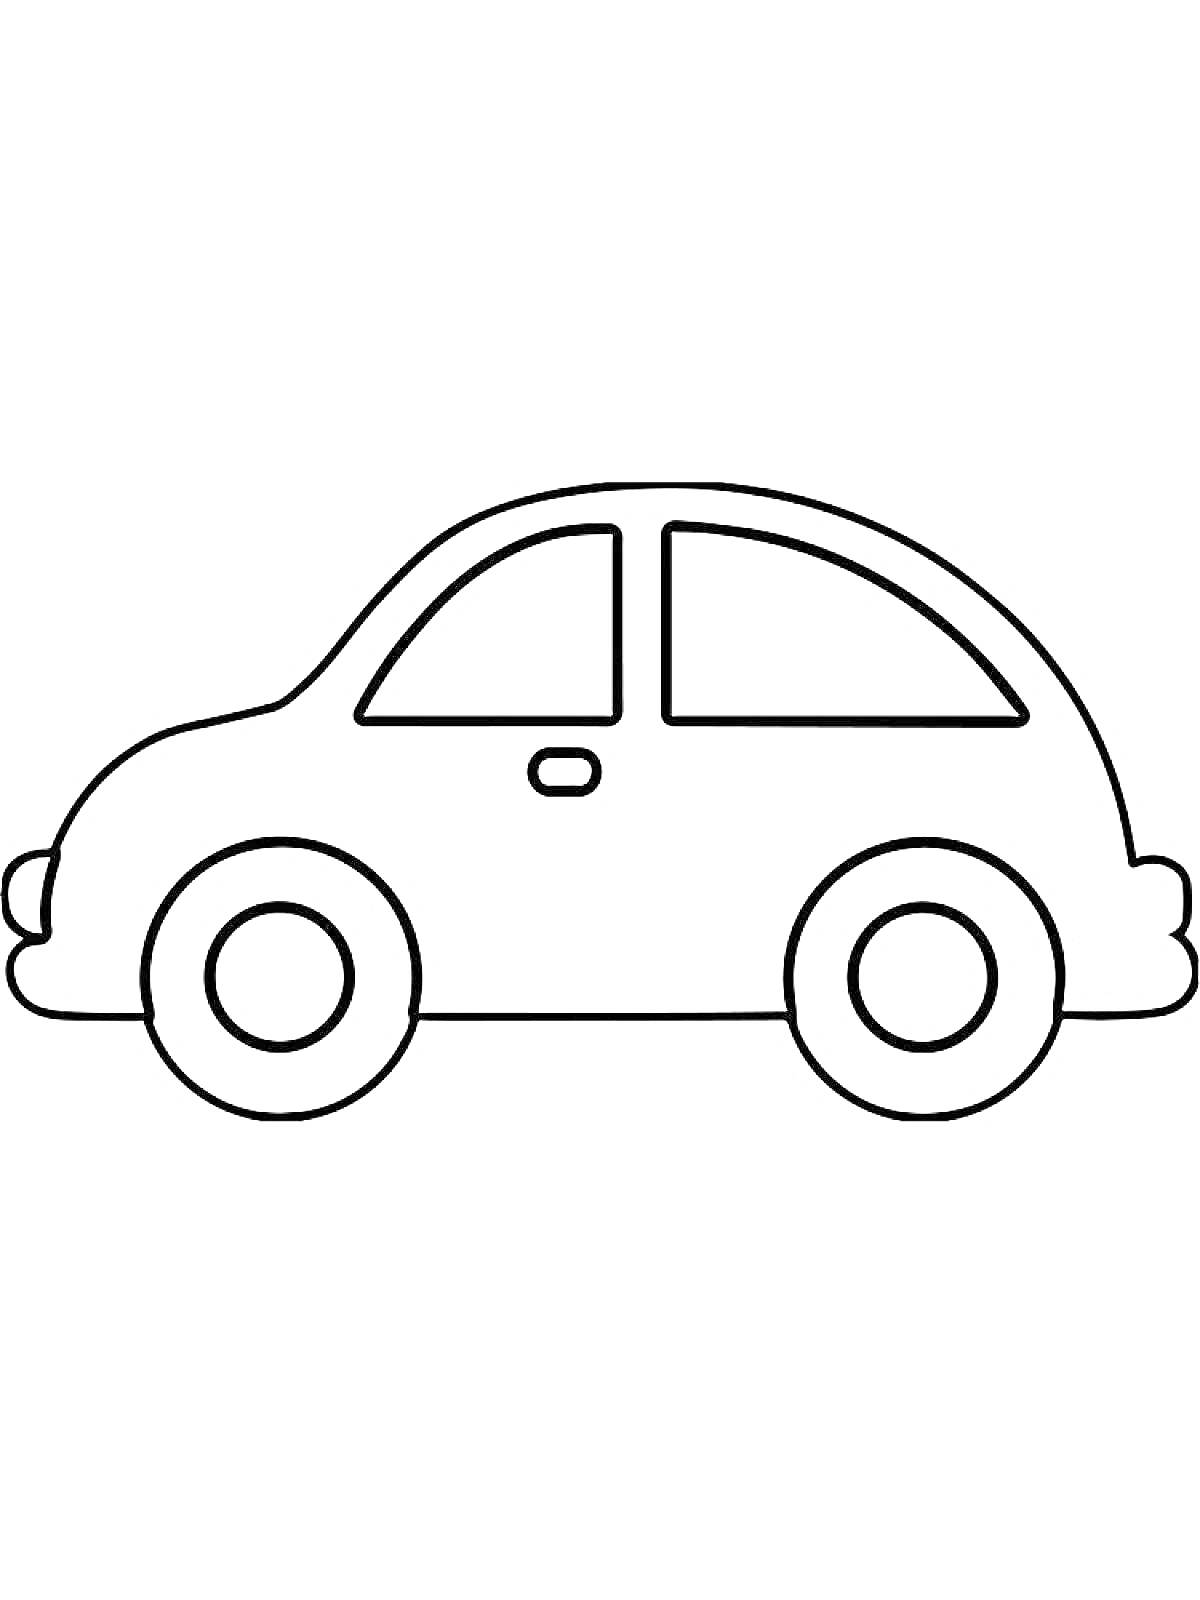 Машинка с окнами и колёсами в профиль